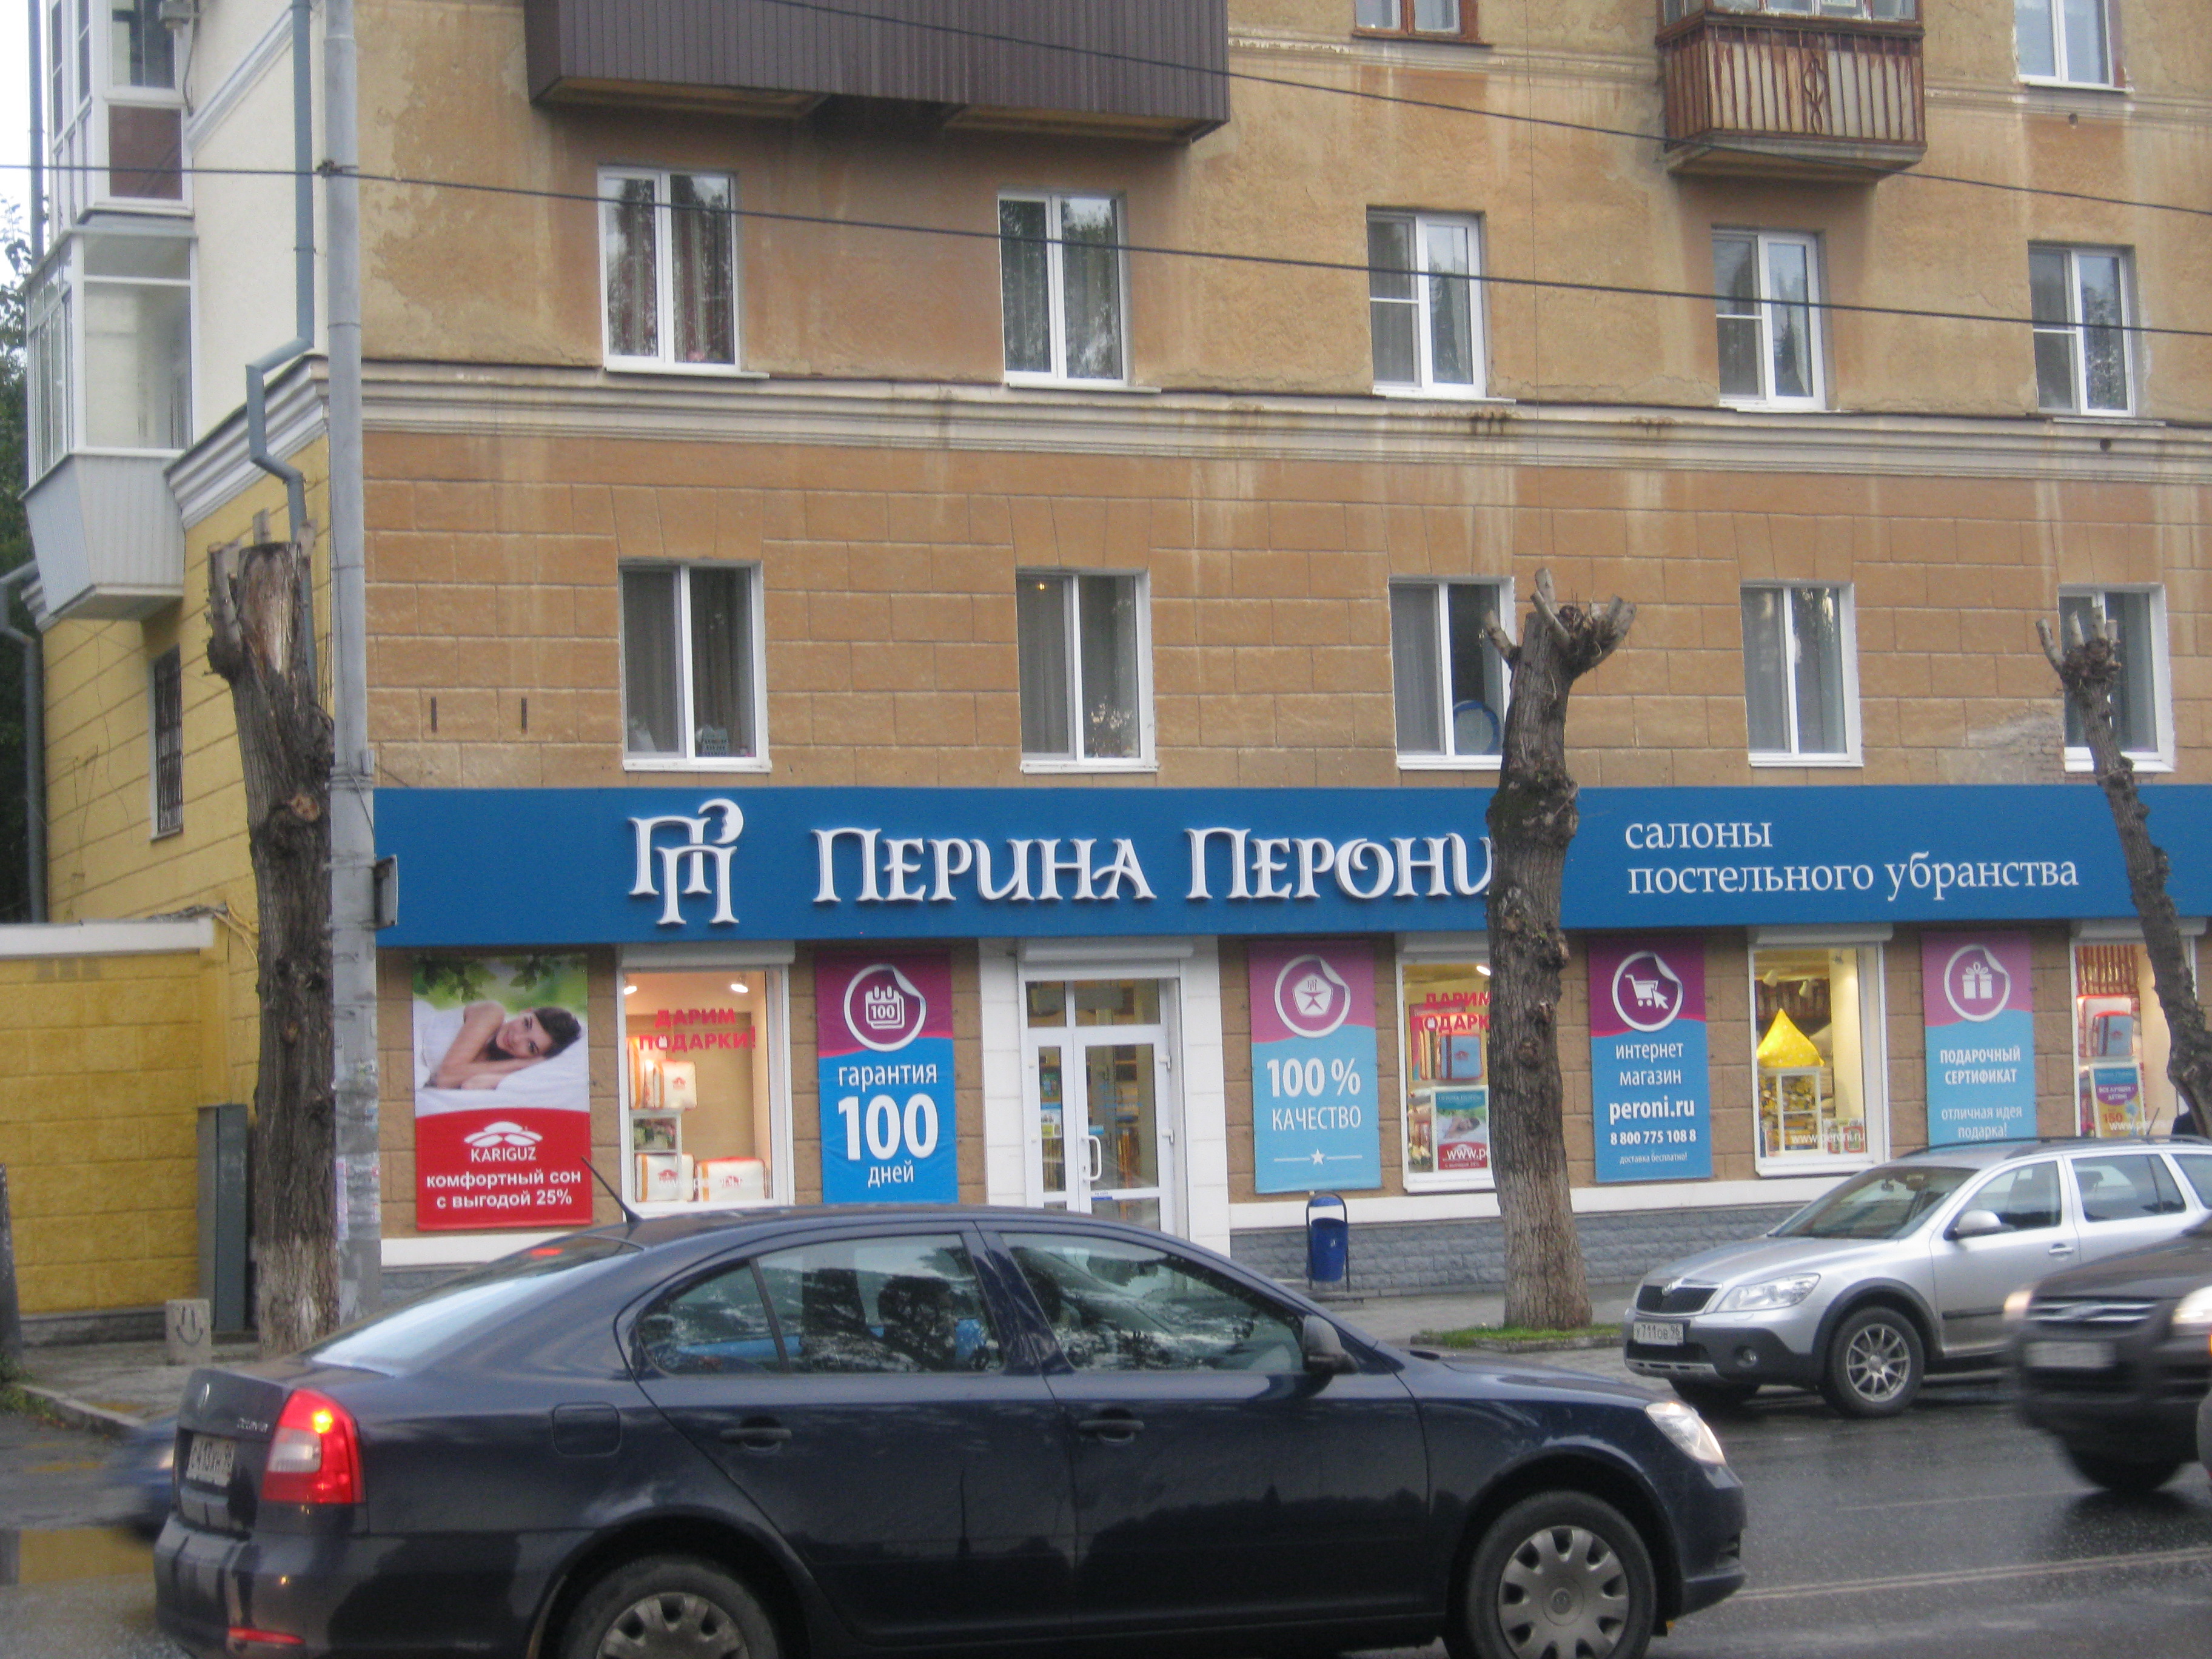 4 Точки Екатеринбург Интернет Магазин Екатеринбург